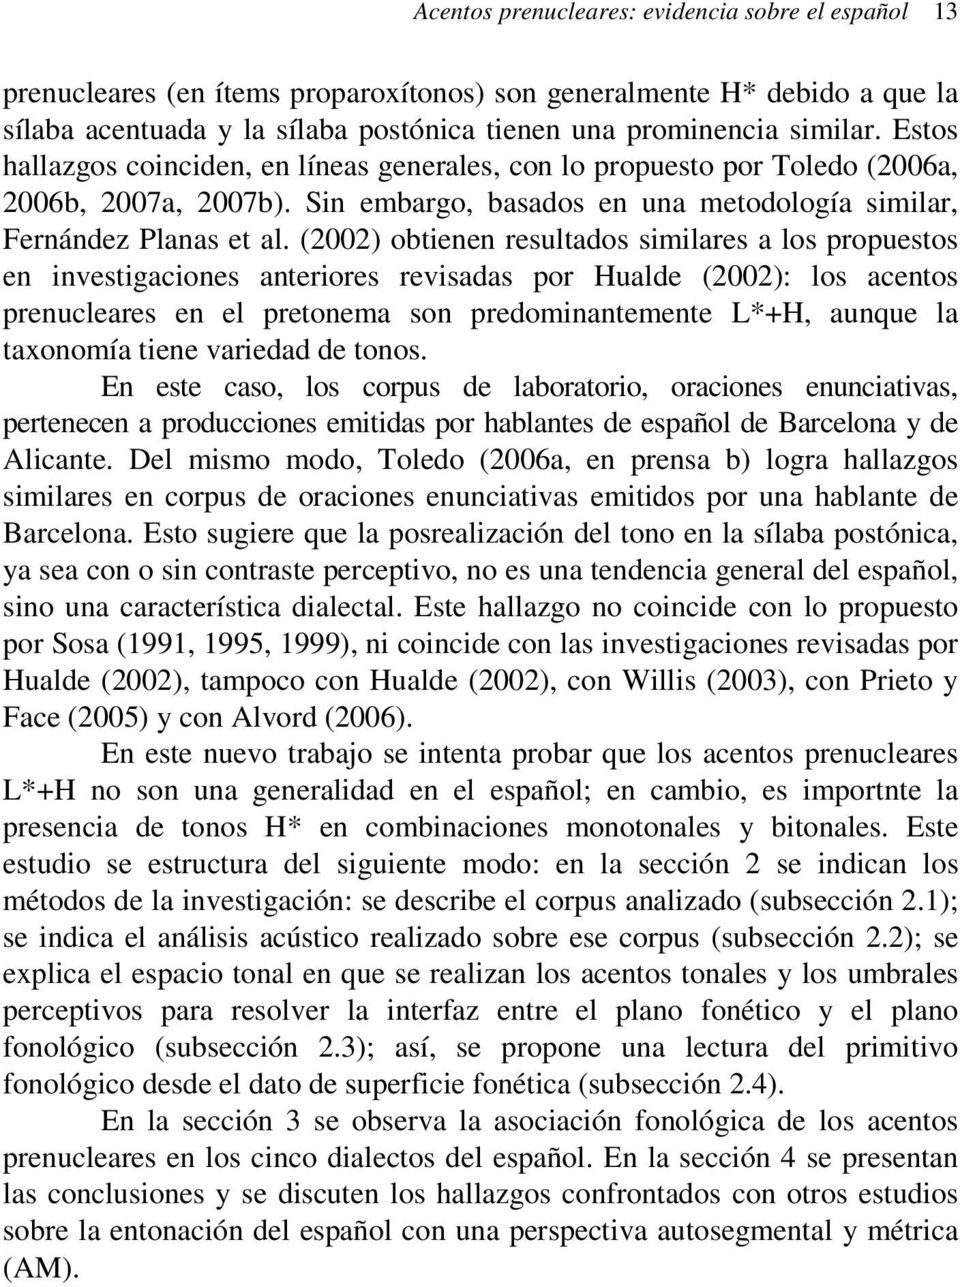 (2002) obtienen resultados similares a los propuestos en investigaciones anteriores revisadas por Hualde (2002): los acentos prenucleares en el pretonema son predominantemente L*+H, aunque la